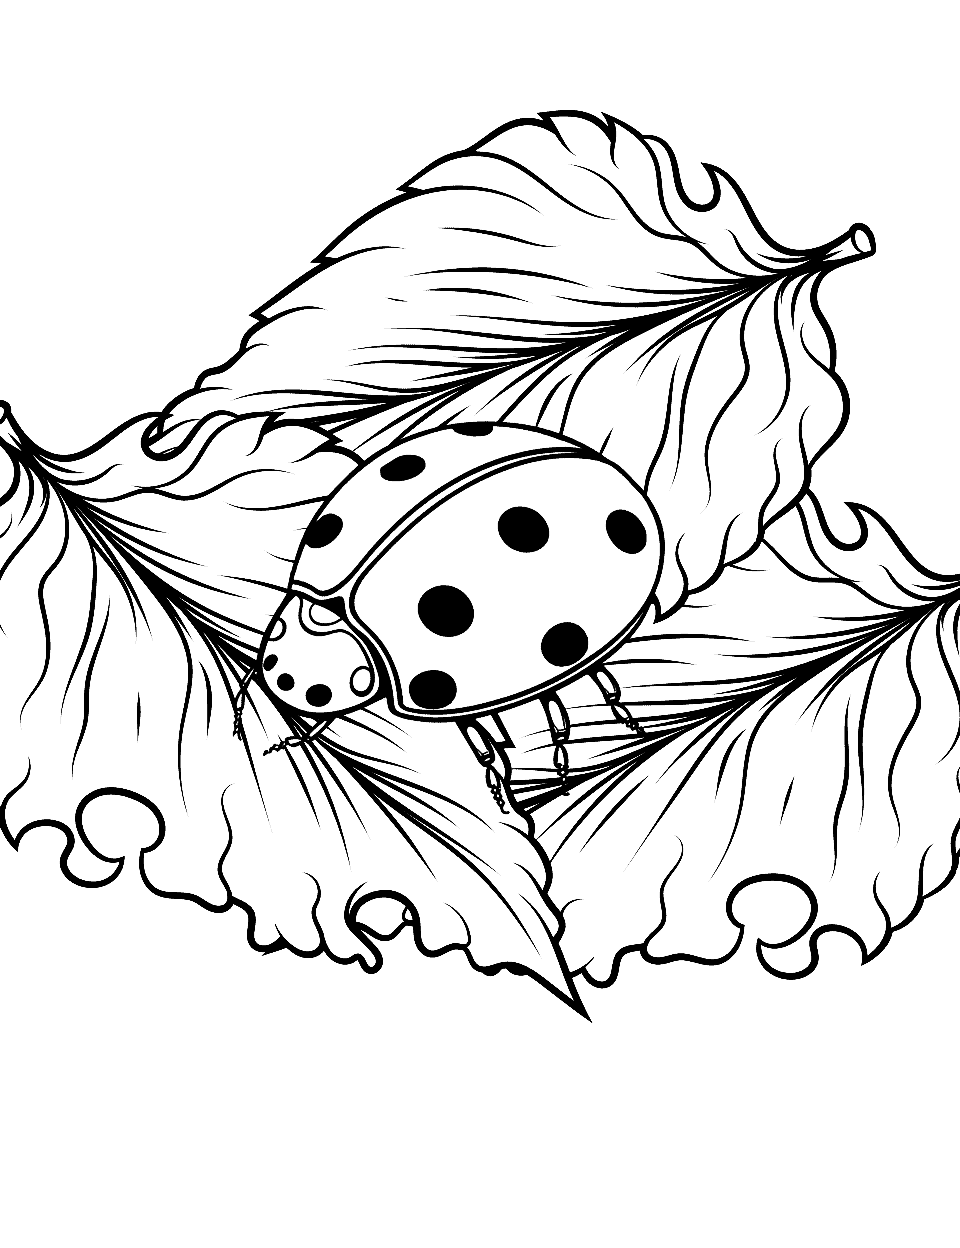 Small Ladybug on a Big World Coloring Page - A tiny ladybug exploring big leaves.